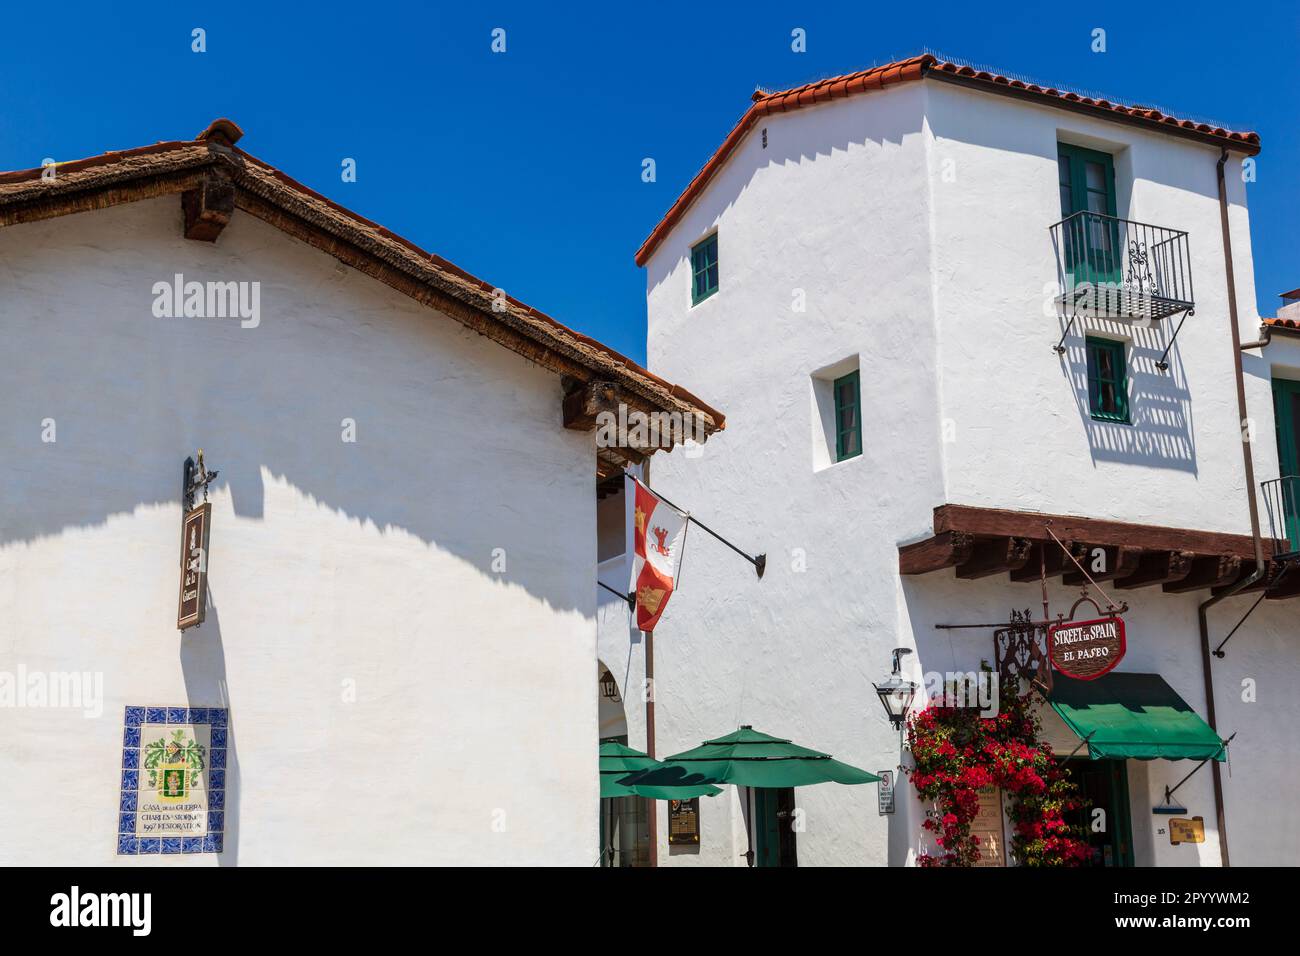 Casa de la Guerra, Santa Barbara, California, USA Stock Photo